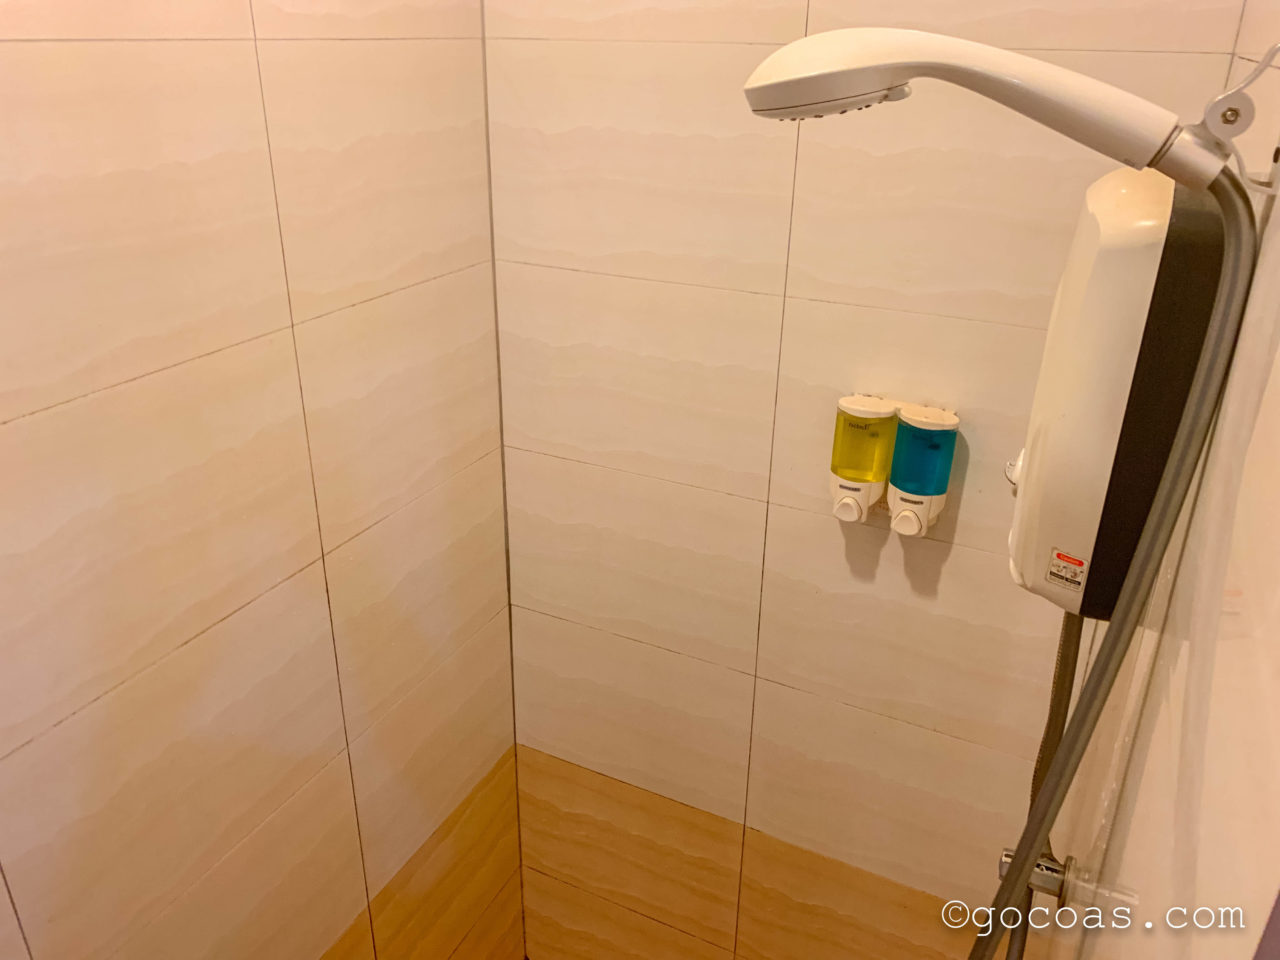 SE Hotelの室内のバスルームのシャワー